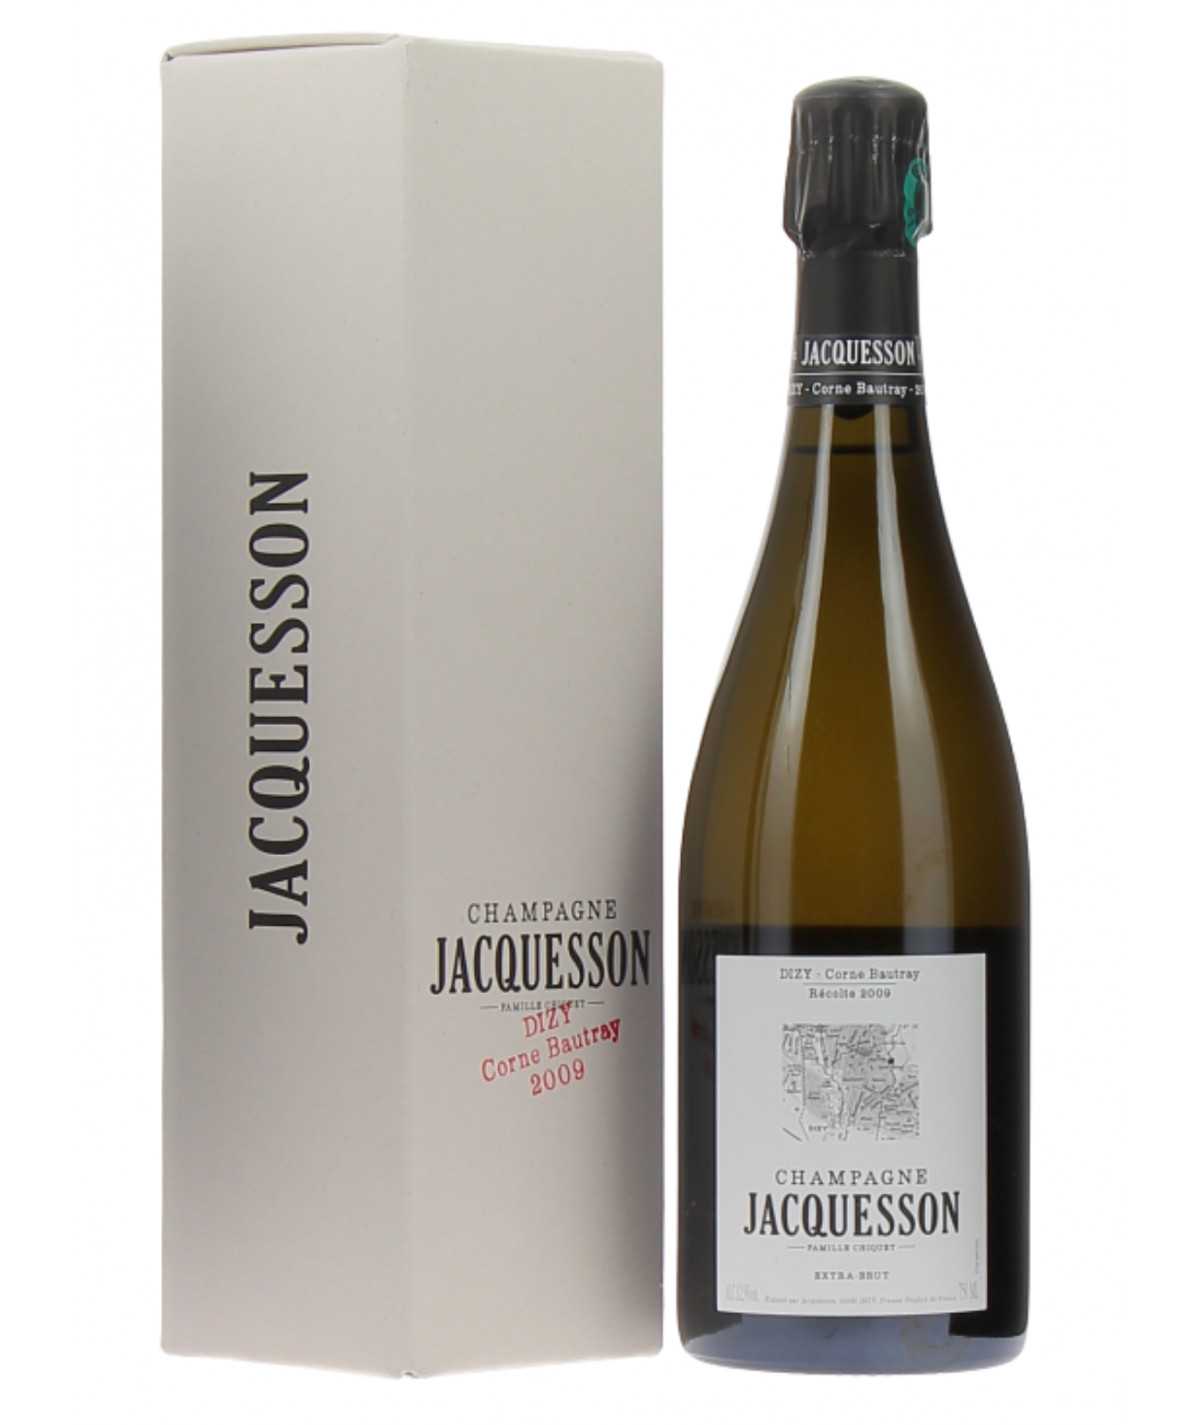 JACQUESSON Champagne Champ Caïn Avize 2009 vintage